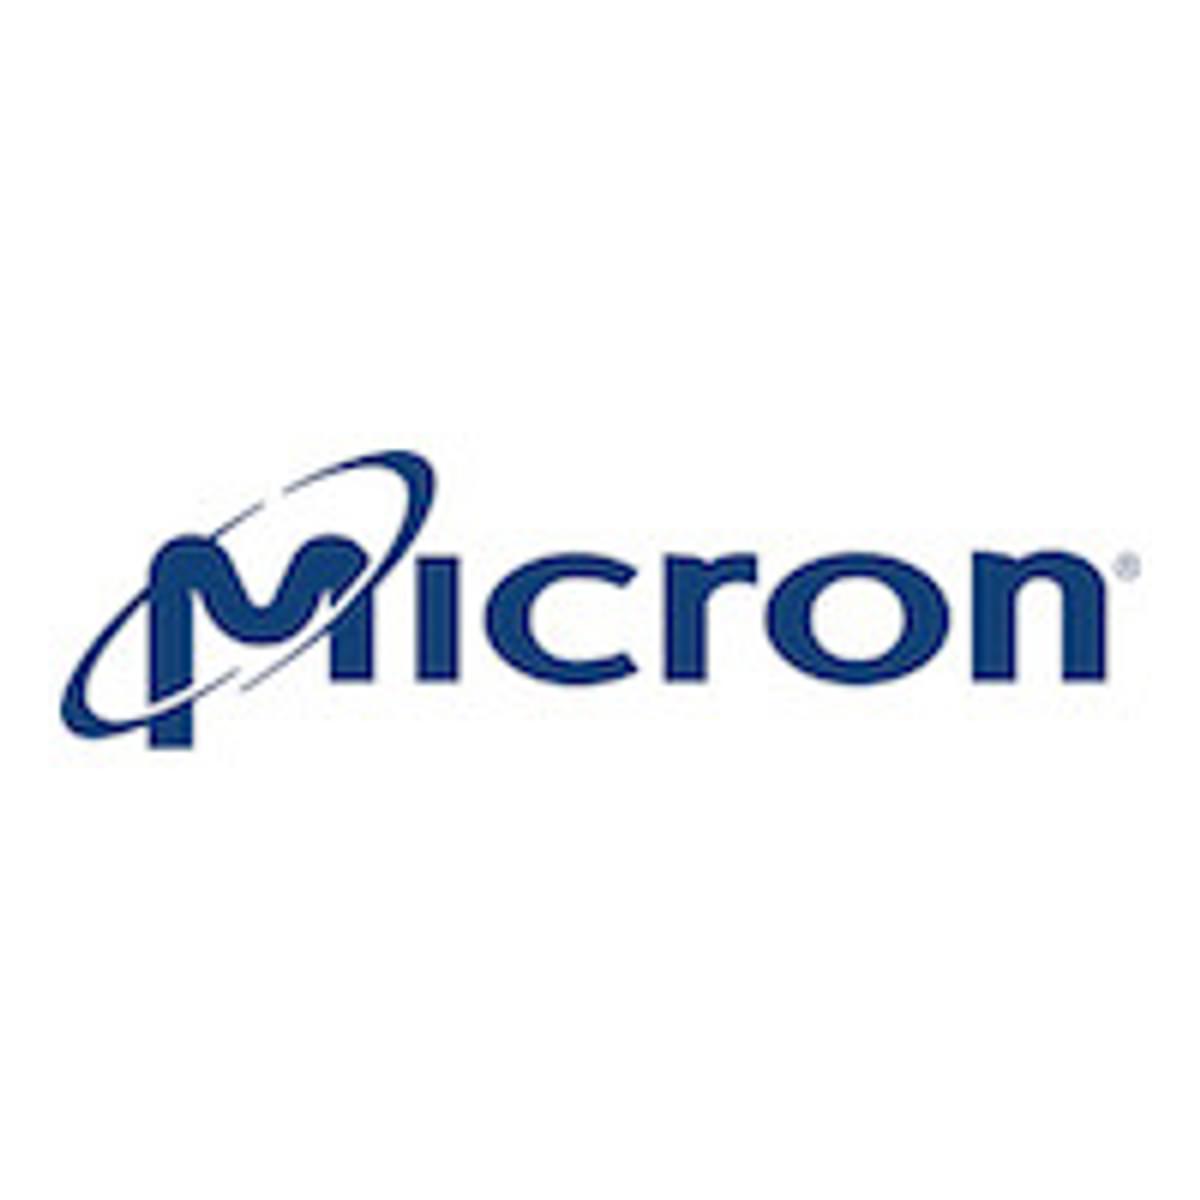 Micron investeert flink in geheugenproductie image